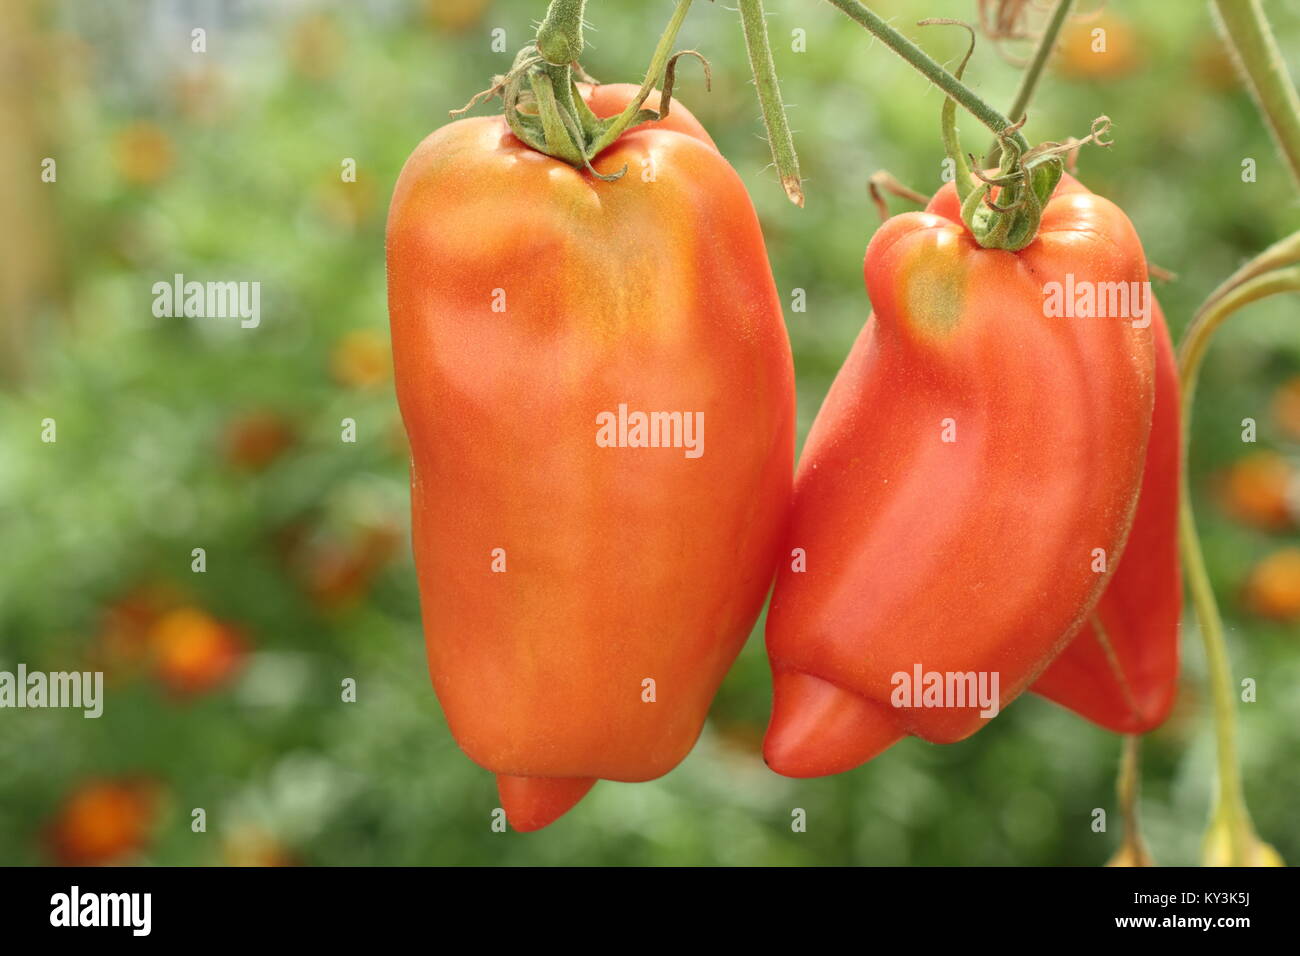 Solanum lycopersicum. Poivre long, 'en forme Andine cornue', une variété de tomate qui poussent sur un plant de tomate vigne dans une serre, England, UK Banque D'Images